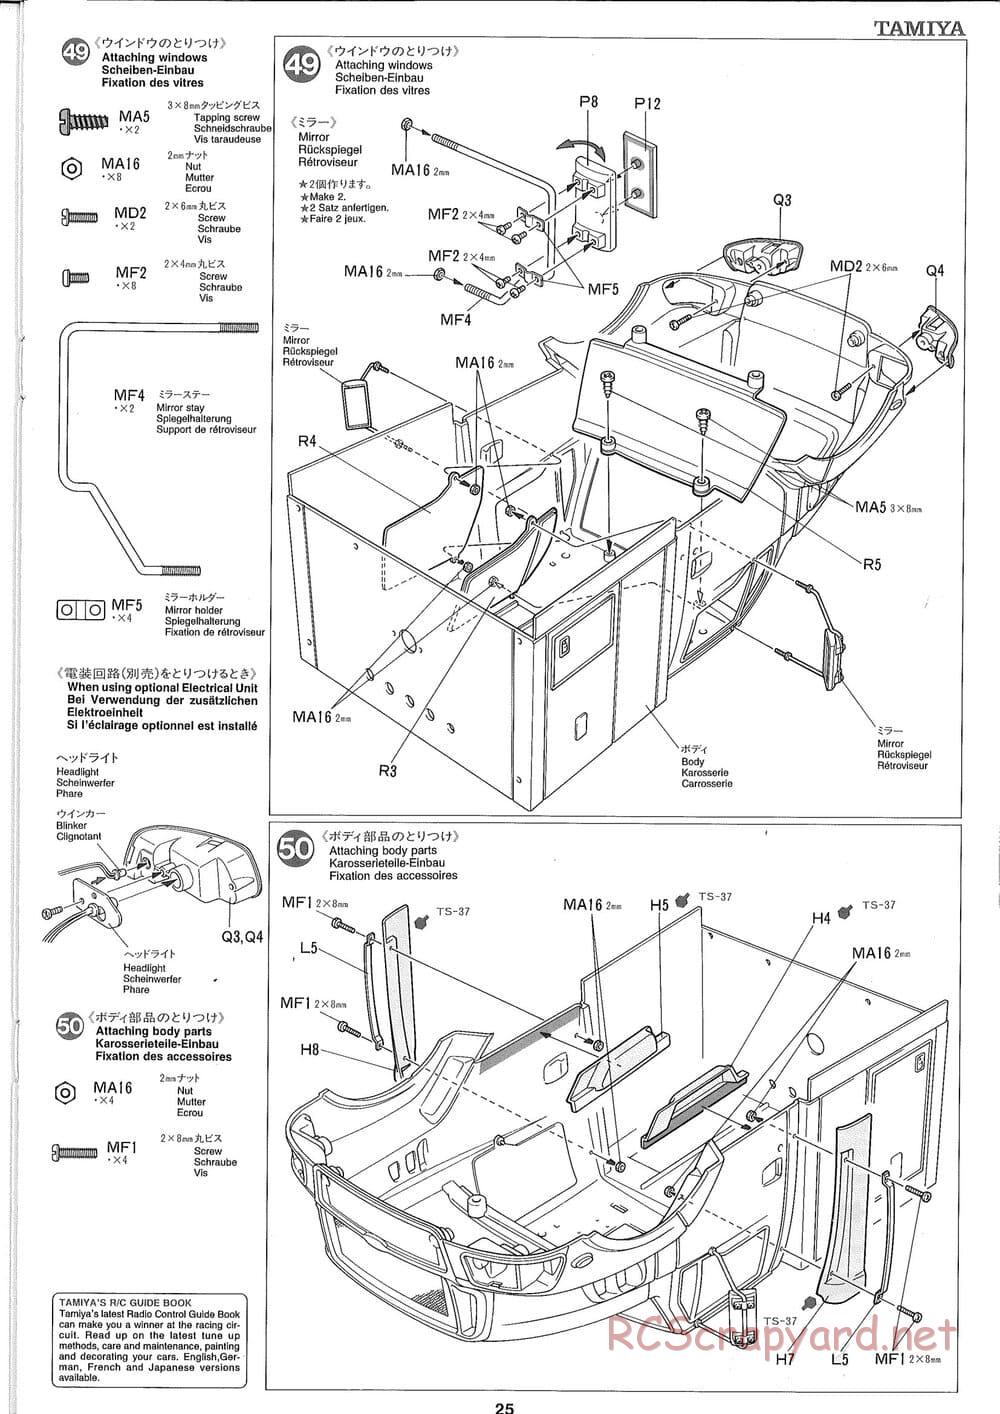 Tamiya - Ford Aeromax - Manual - Page 25